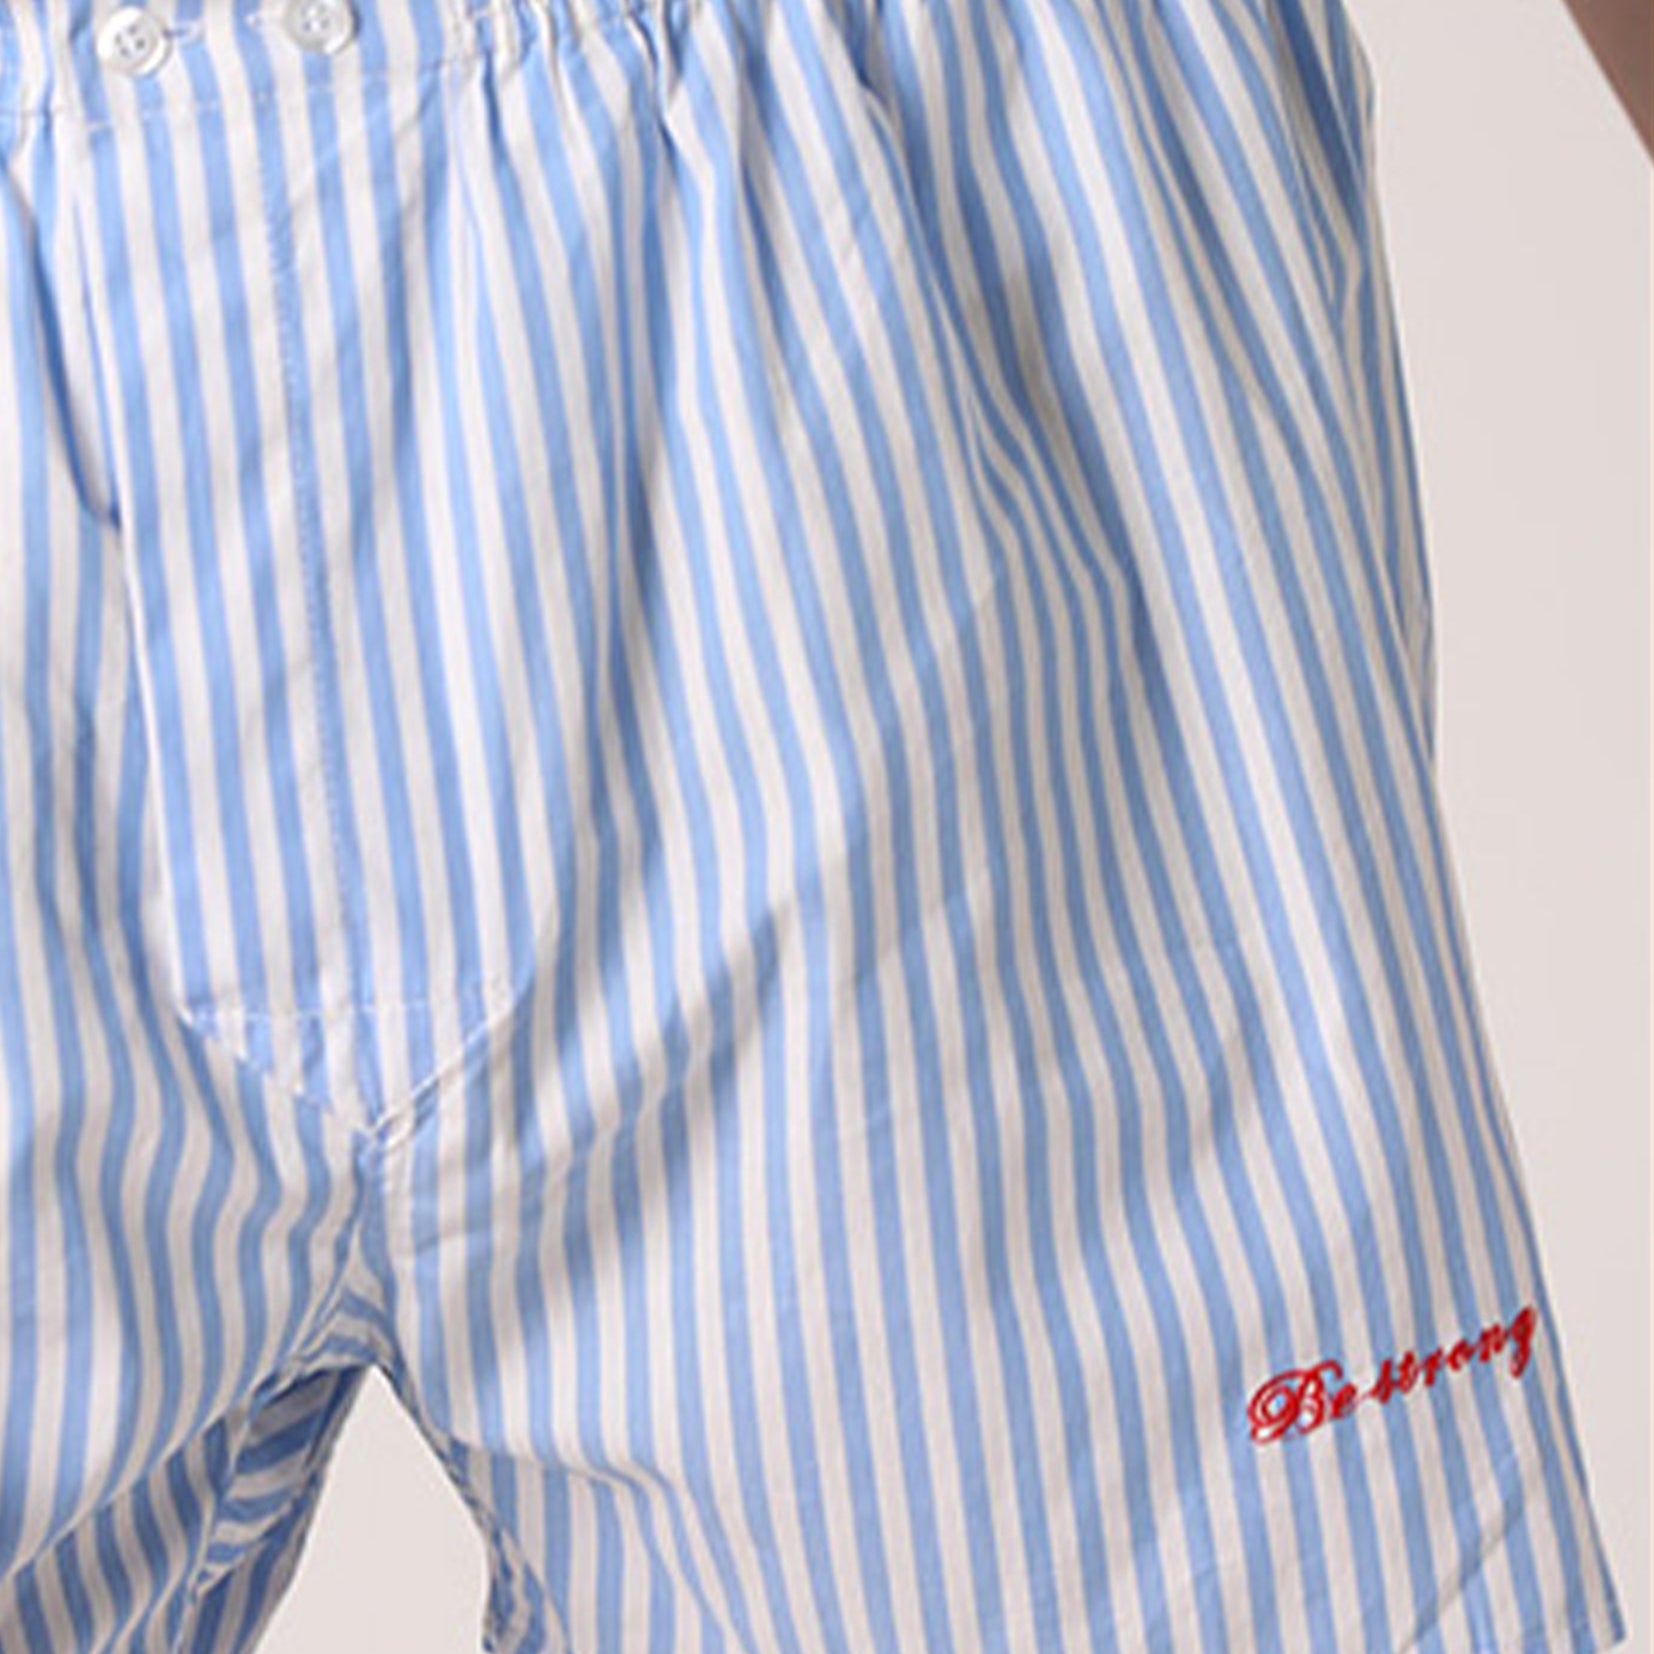 Unisex striped boxer shorts underwear in blue